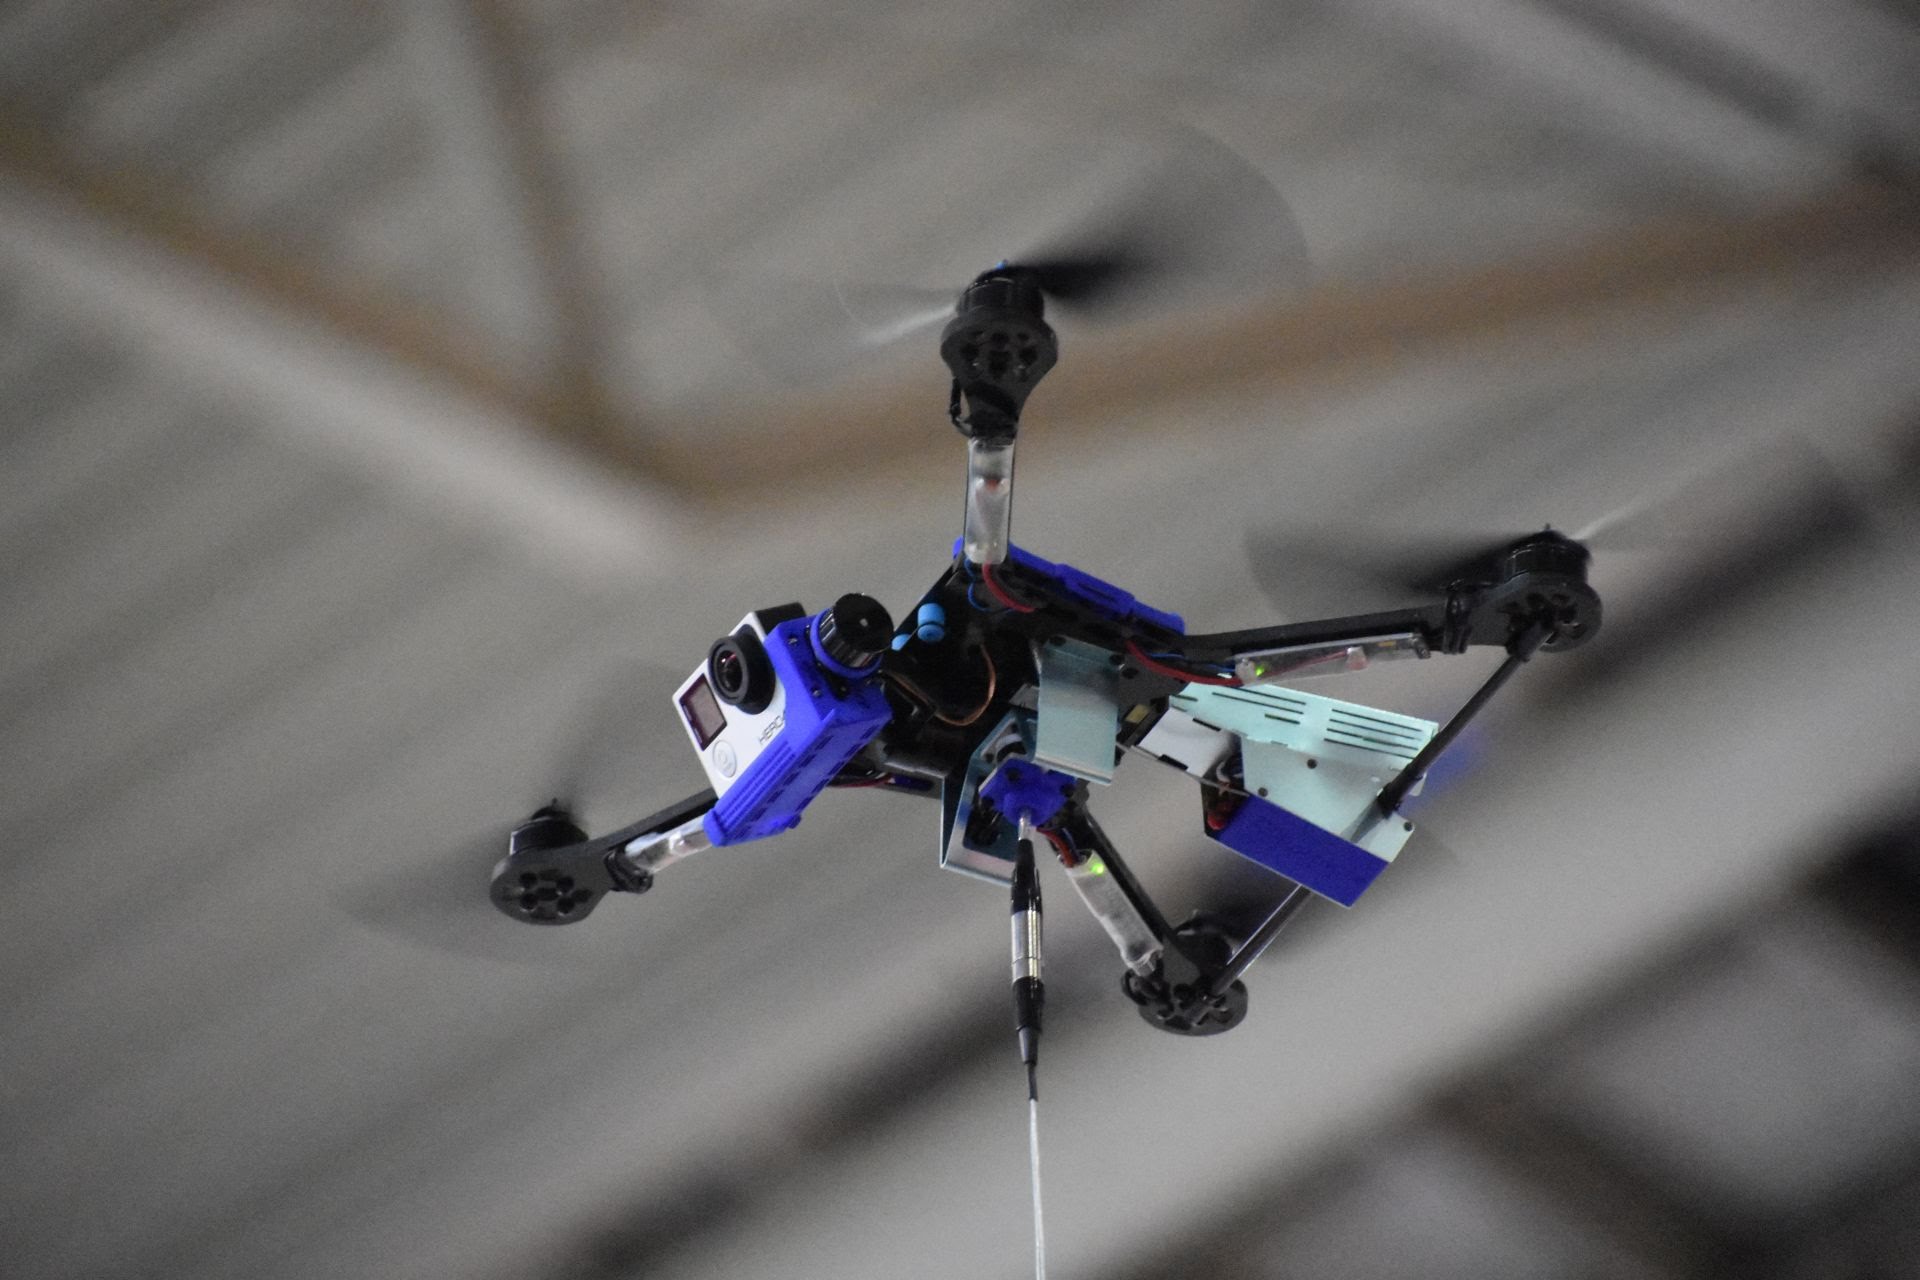 Selfie Drone Fotokite flies at Hannover Messe